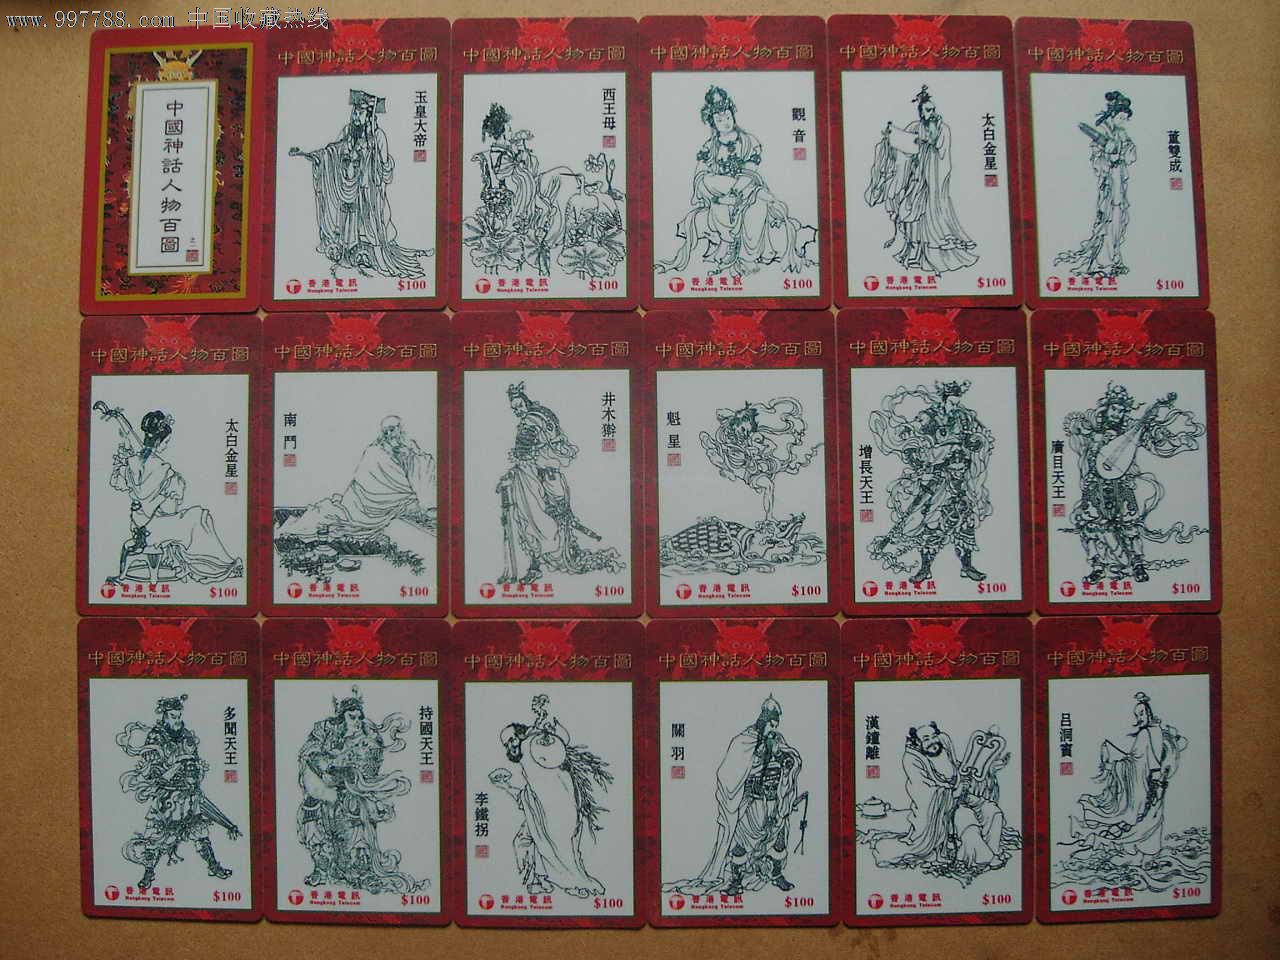 香港电讯中国神话人物百图收藏套卡(175枚大全套)